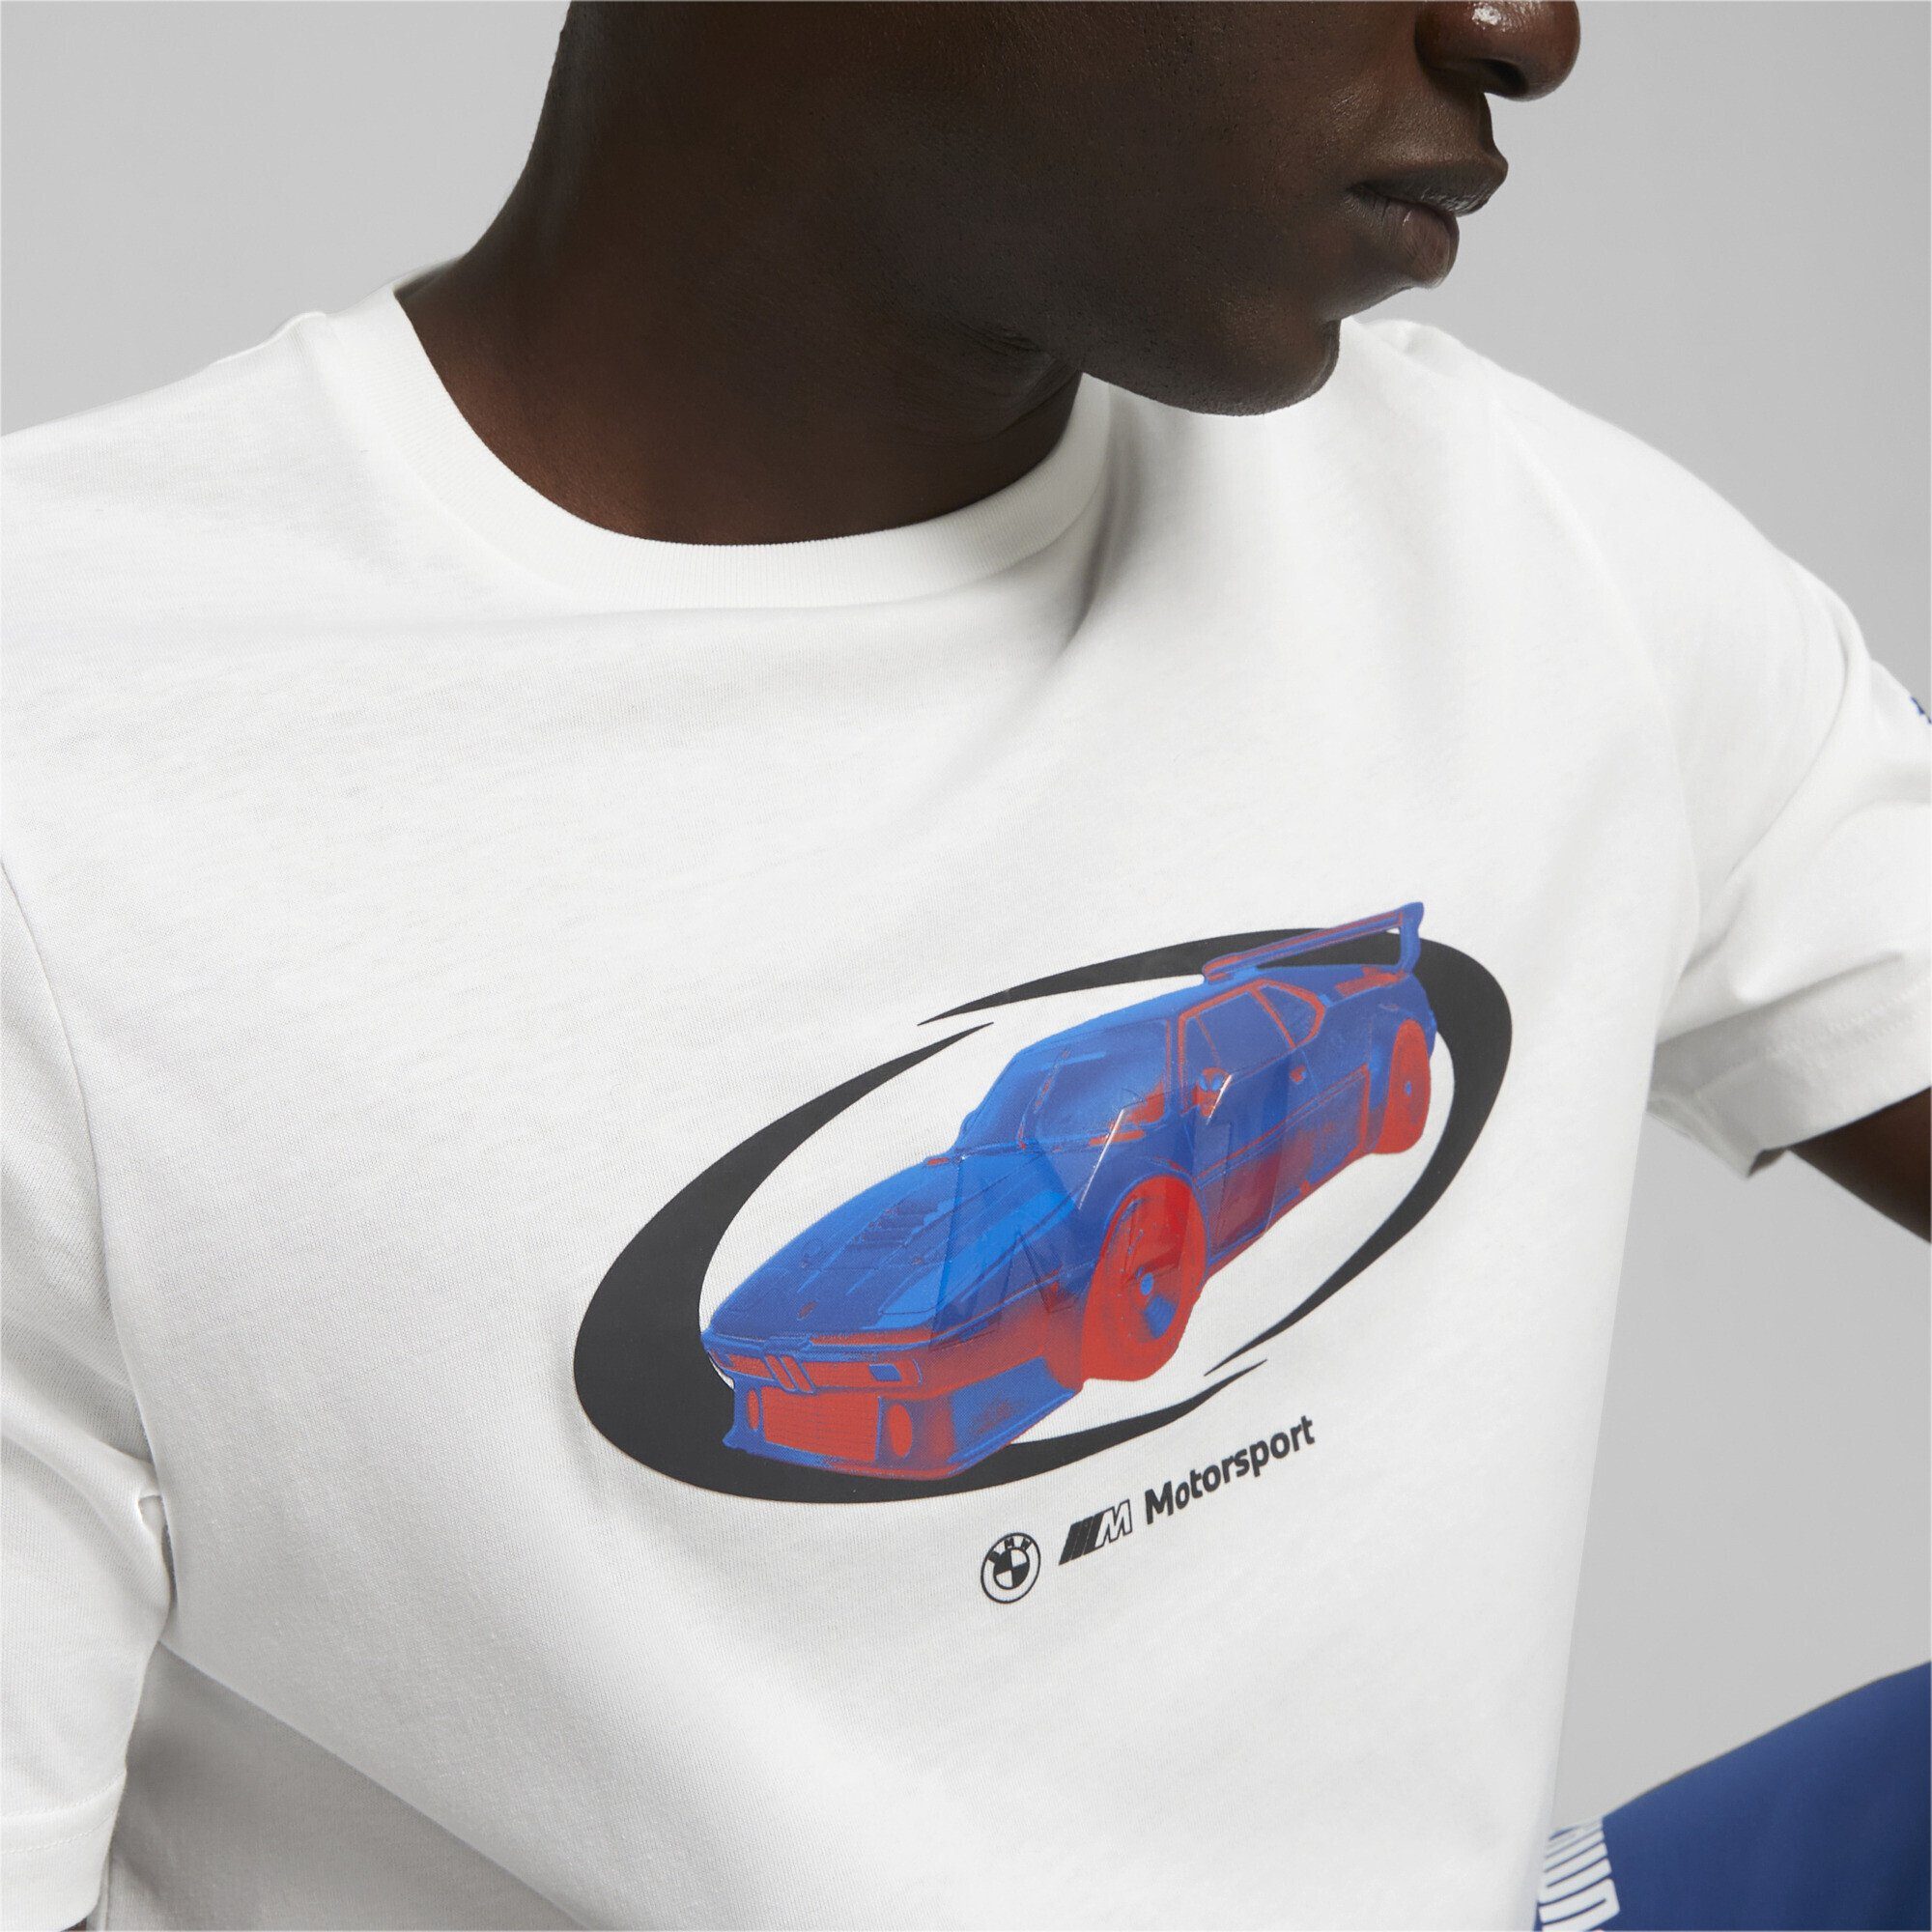 T-Shirt M Statement White PUMA Motorsport Car BMW T-Shirt Herren